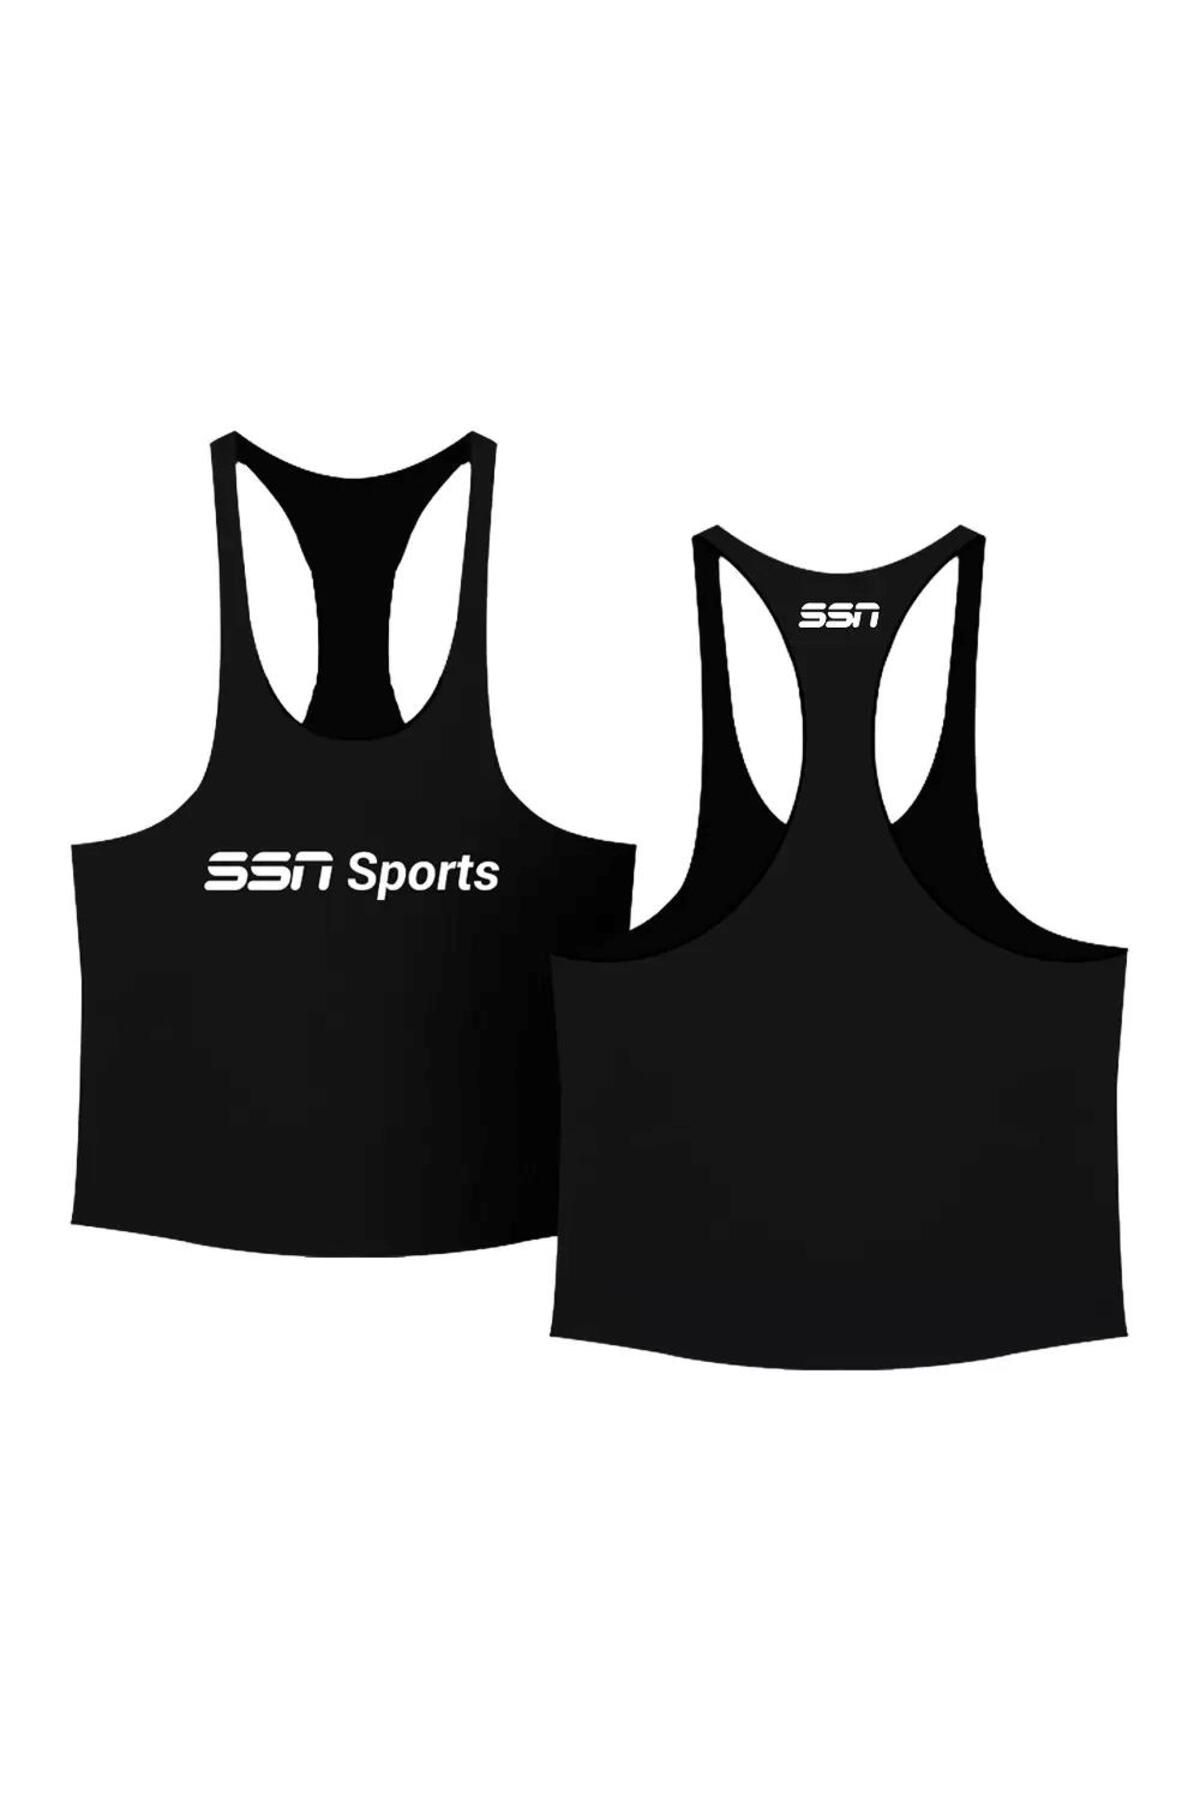 SSN Sports Style Nutrition Fitment Kolsuz Oversize Tank Top Atlet